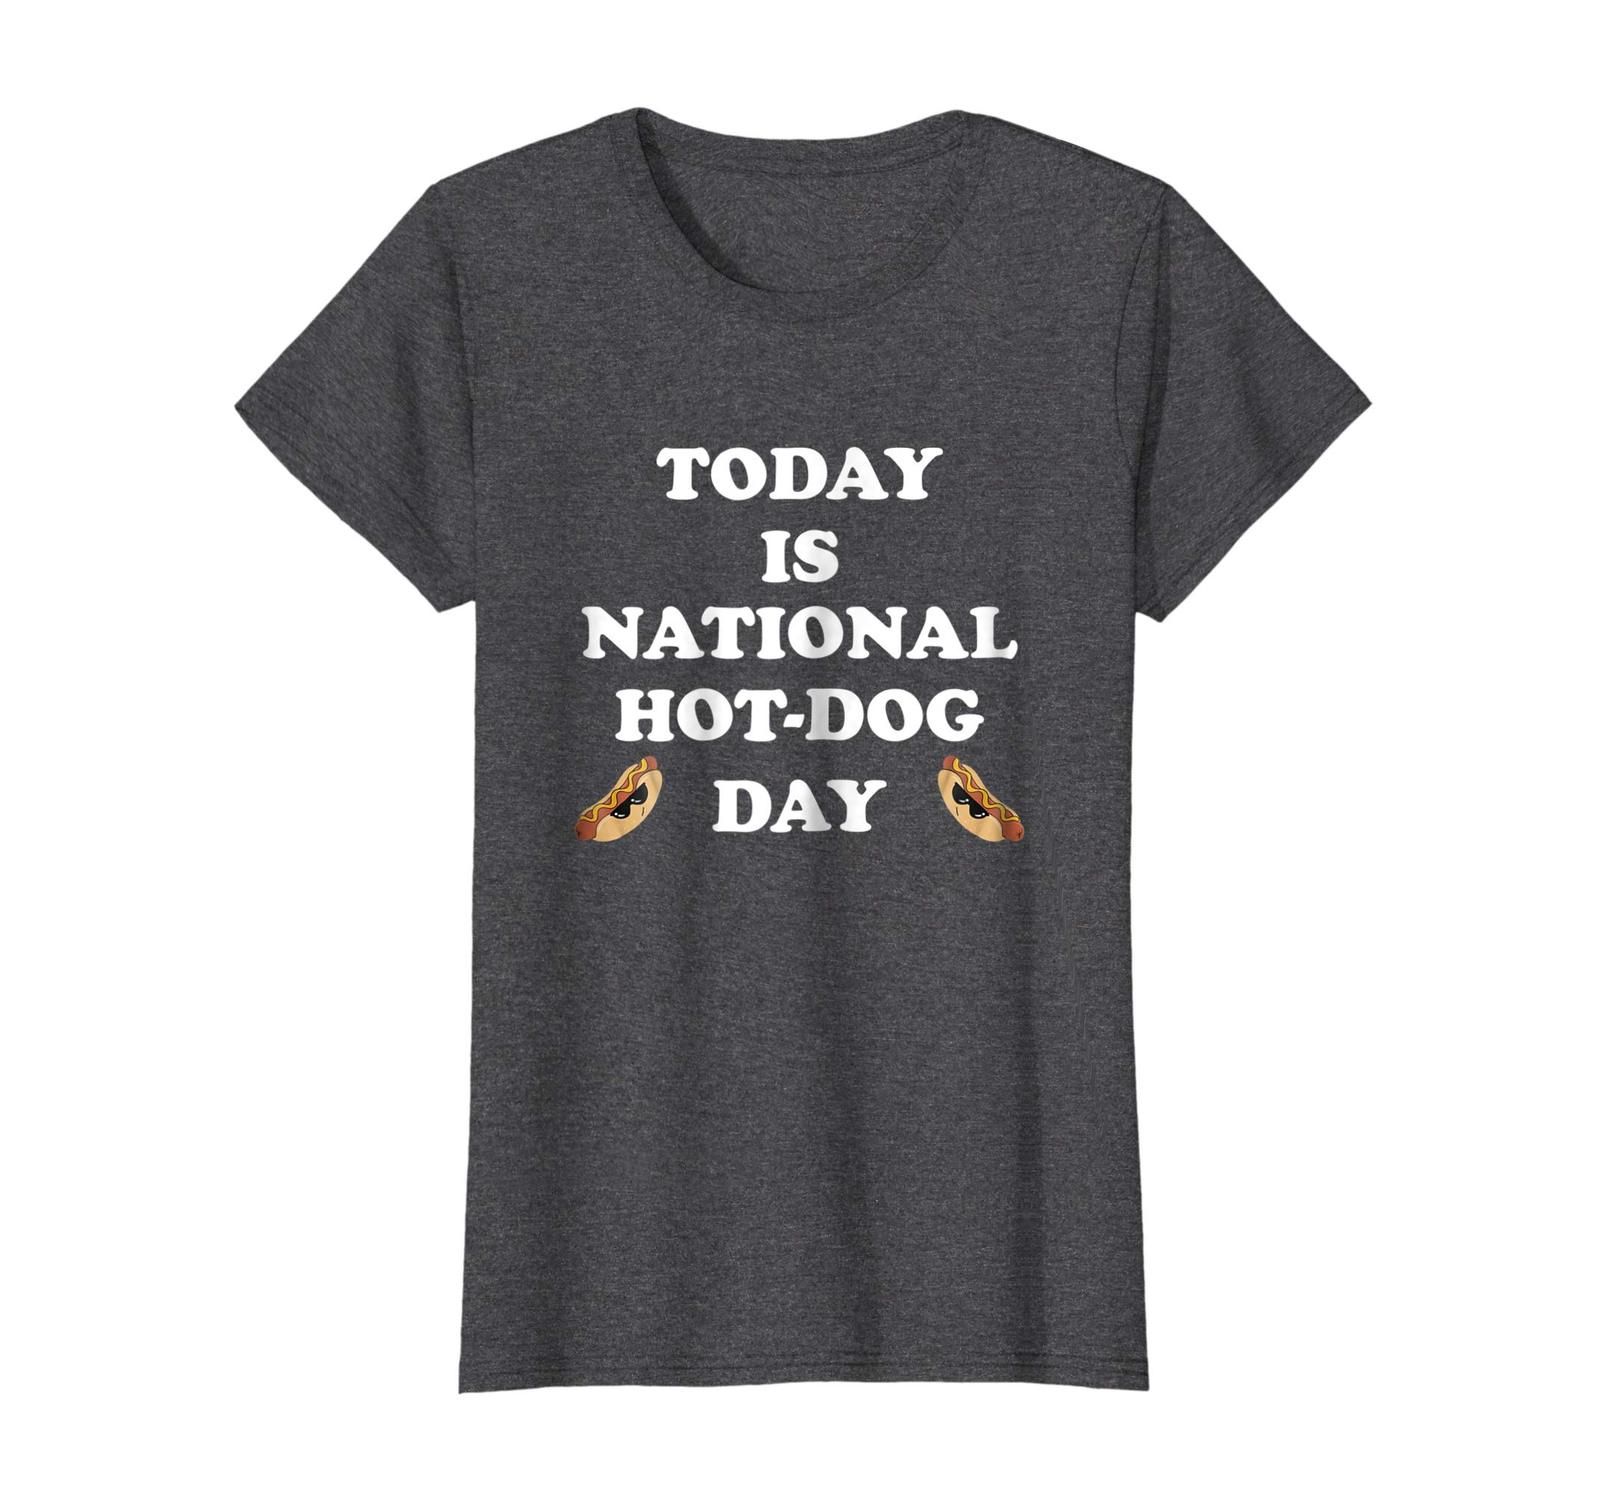 Dog Fashion - National Hot-Dog Day Tees Shirts men women kid t-shirt Wowen